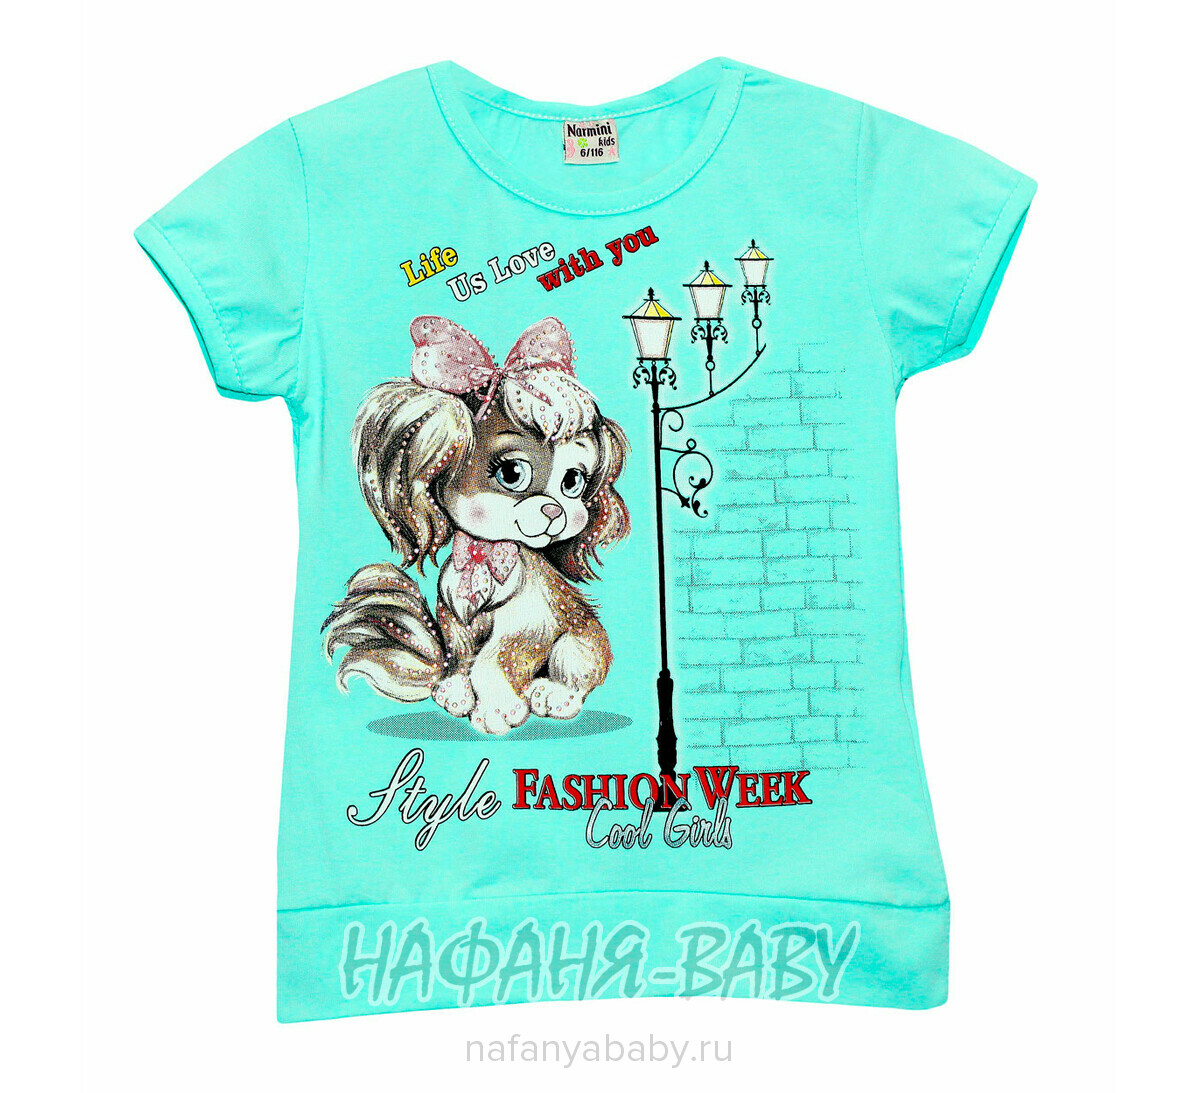 Детская футболка NARMINI, купить в интернет магазине Нафаня. арт: 5544.